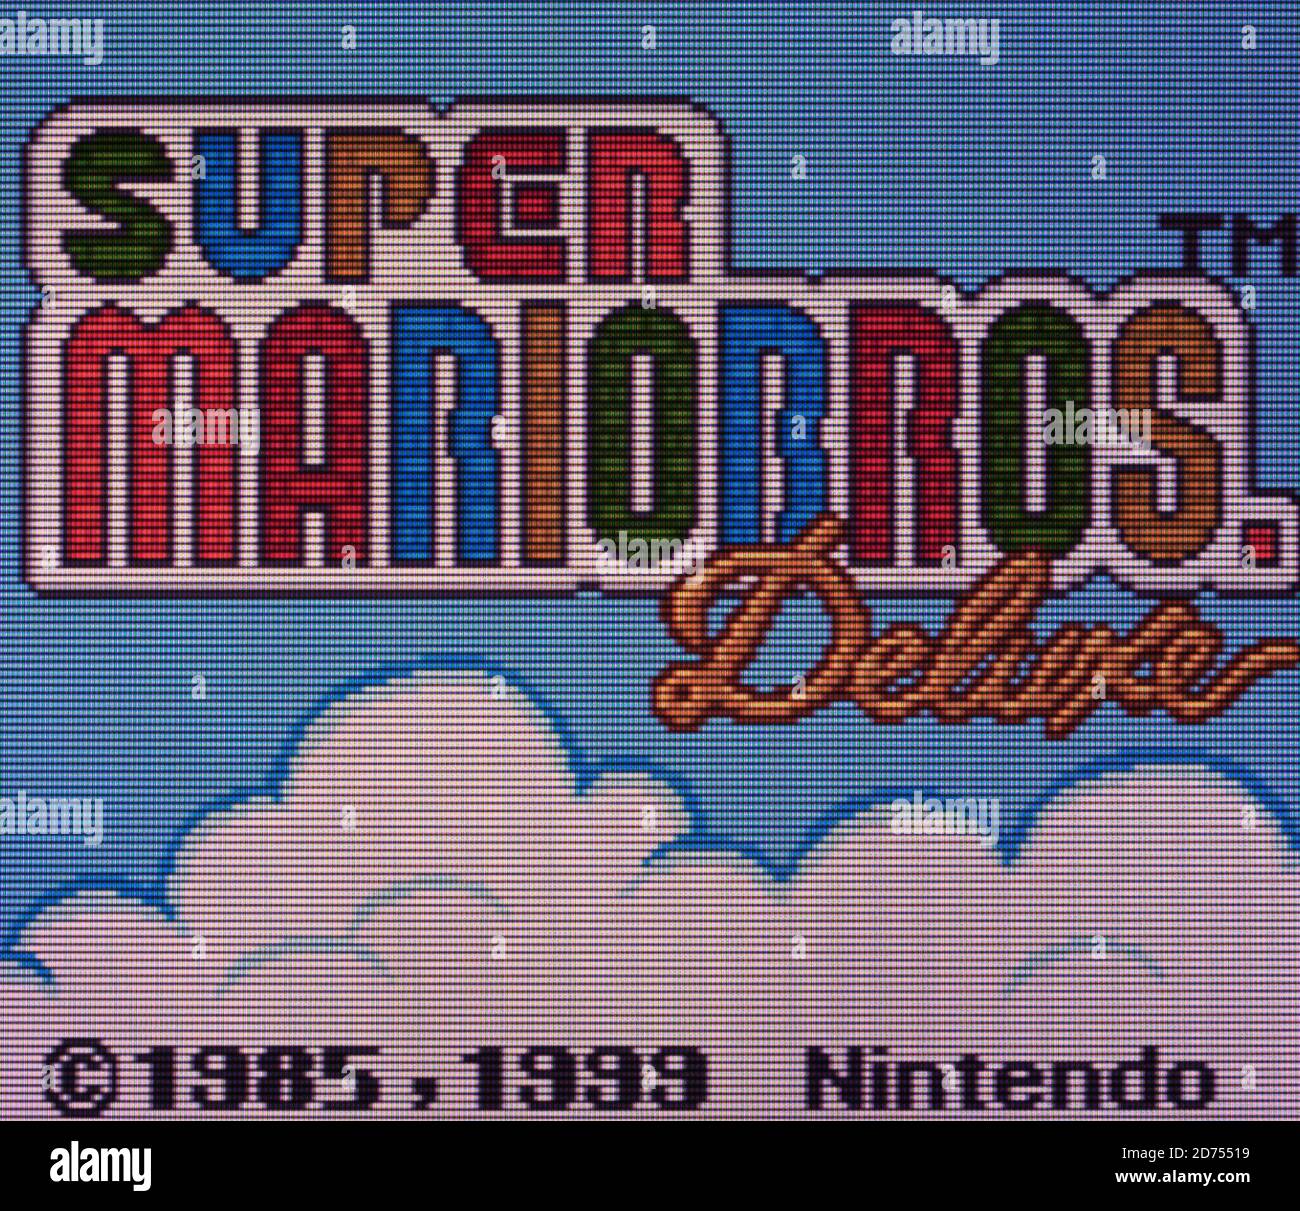 Super Mario Bros. Deluxe Game Boy Color